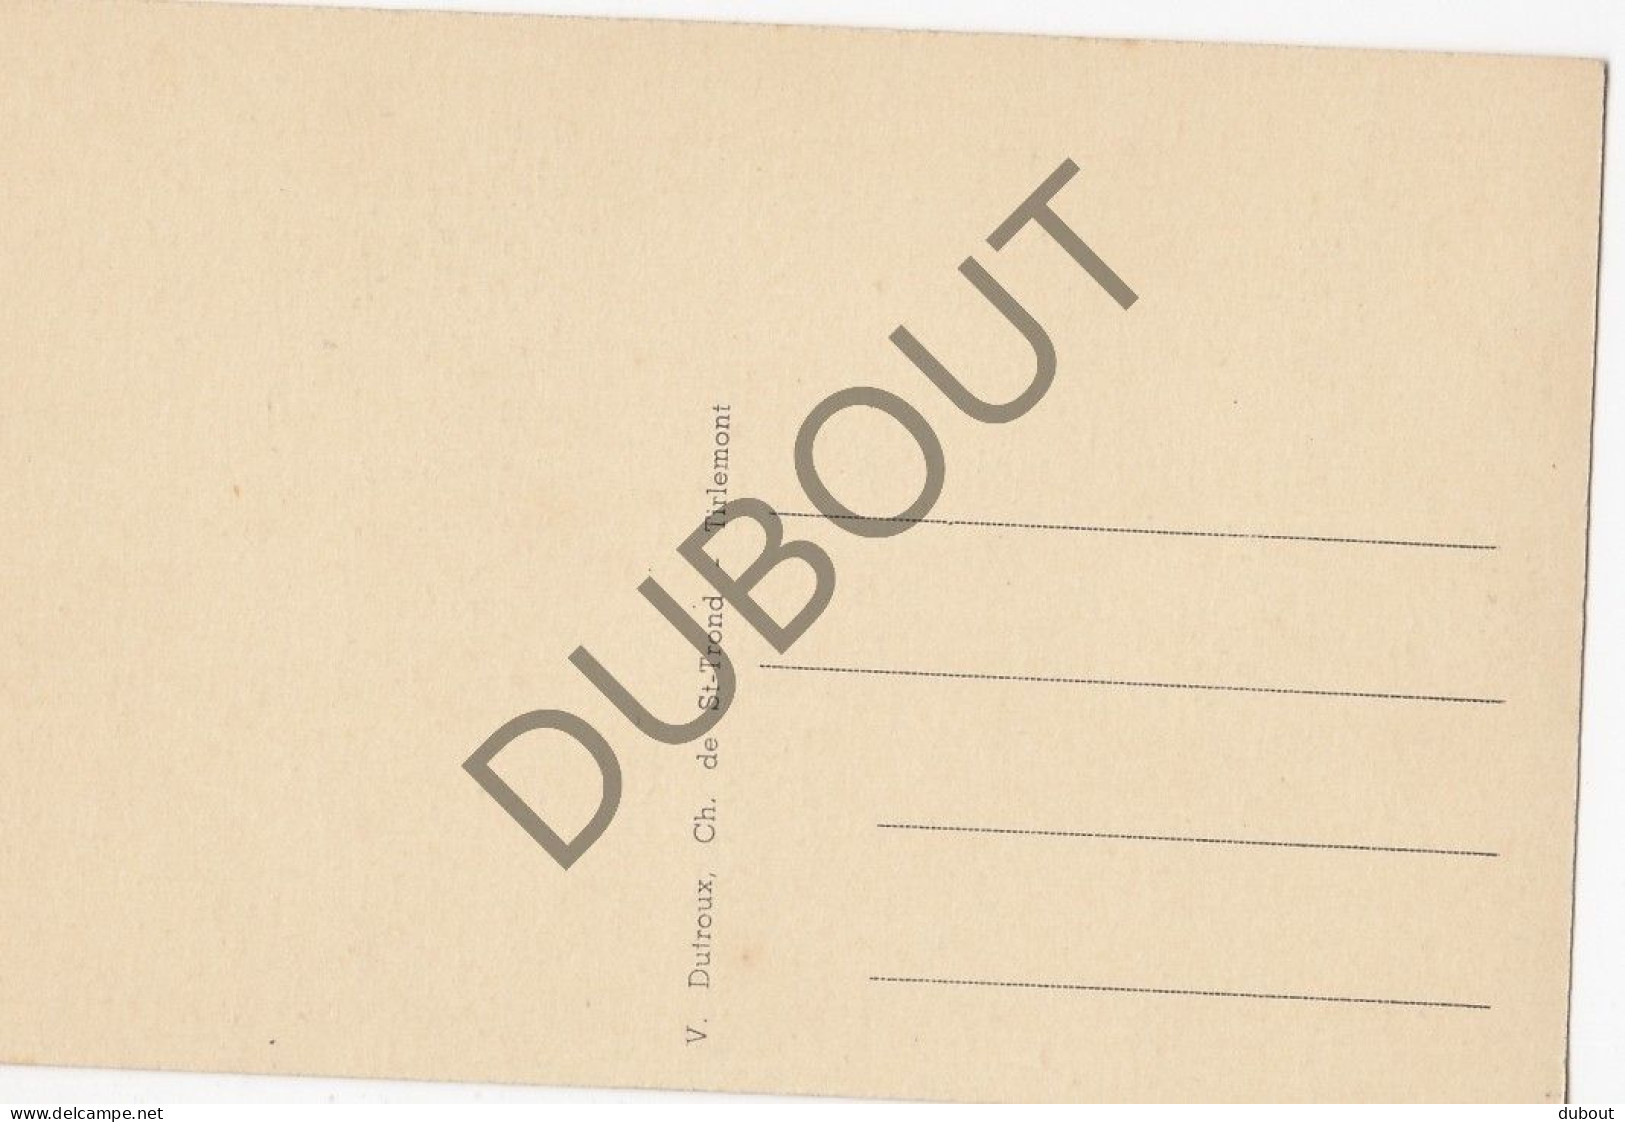 Postkaart/Carte Postale - Hoegaarden - Gemeenteplaats   (C3040) - Hoegaarden